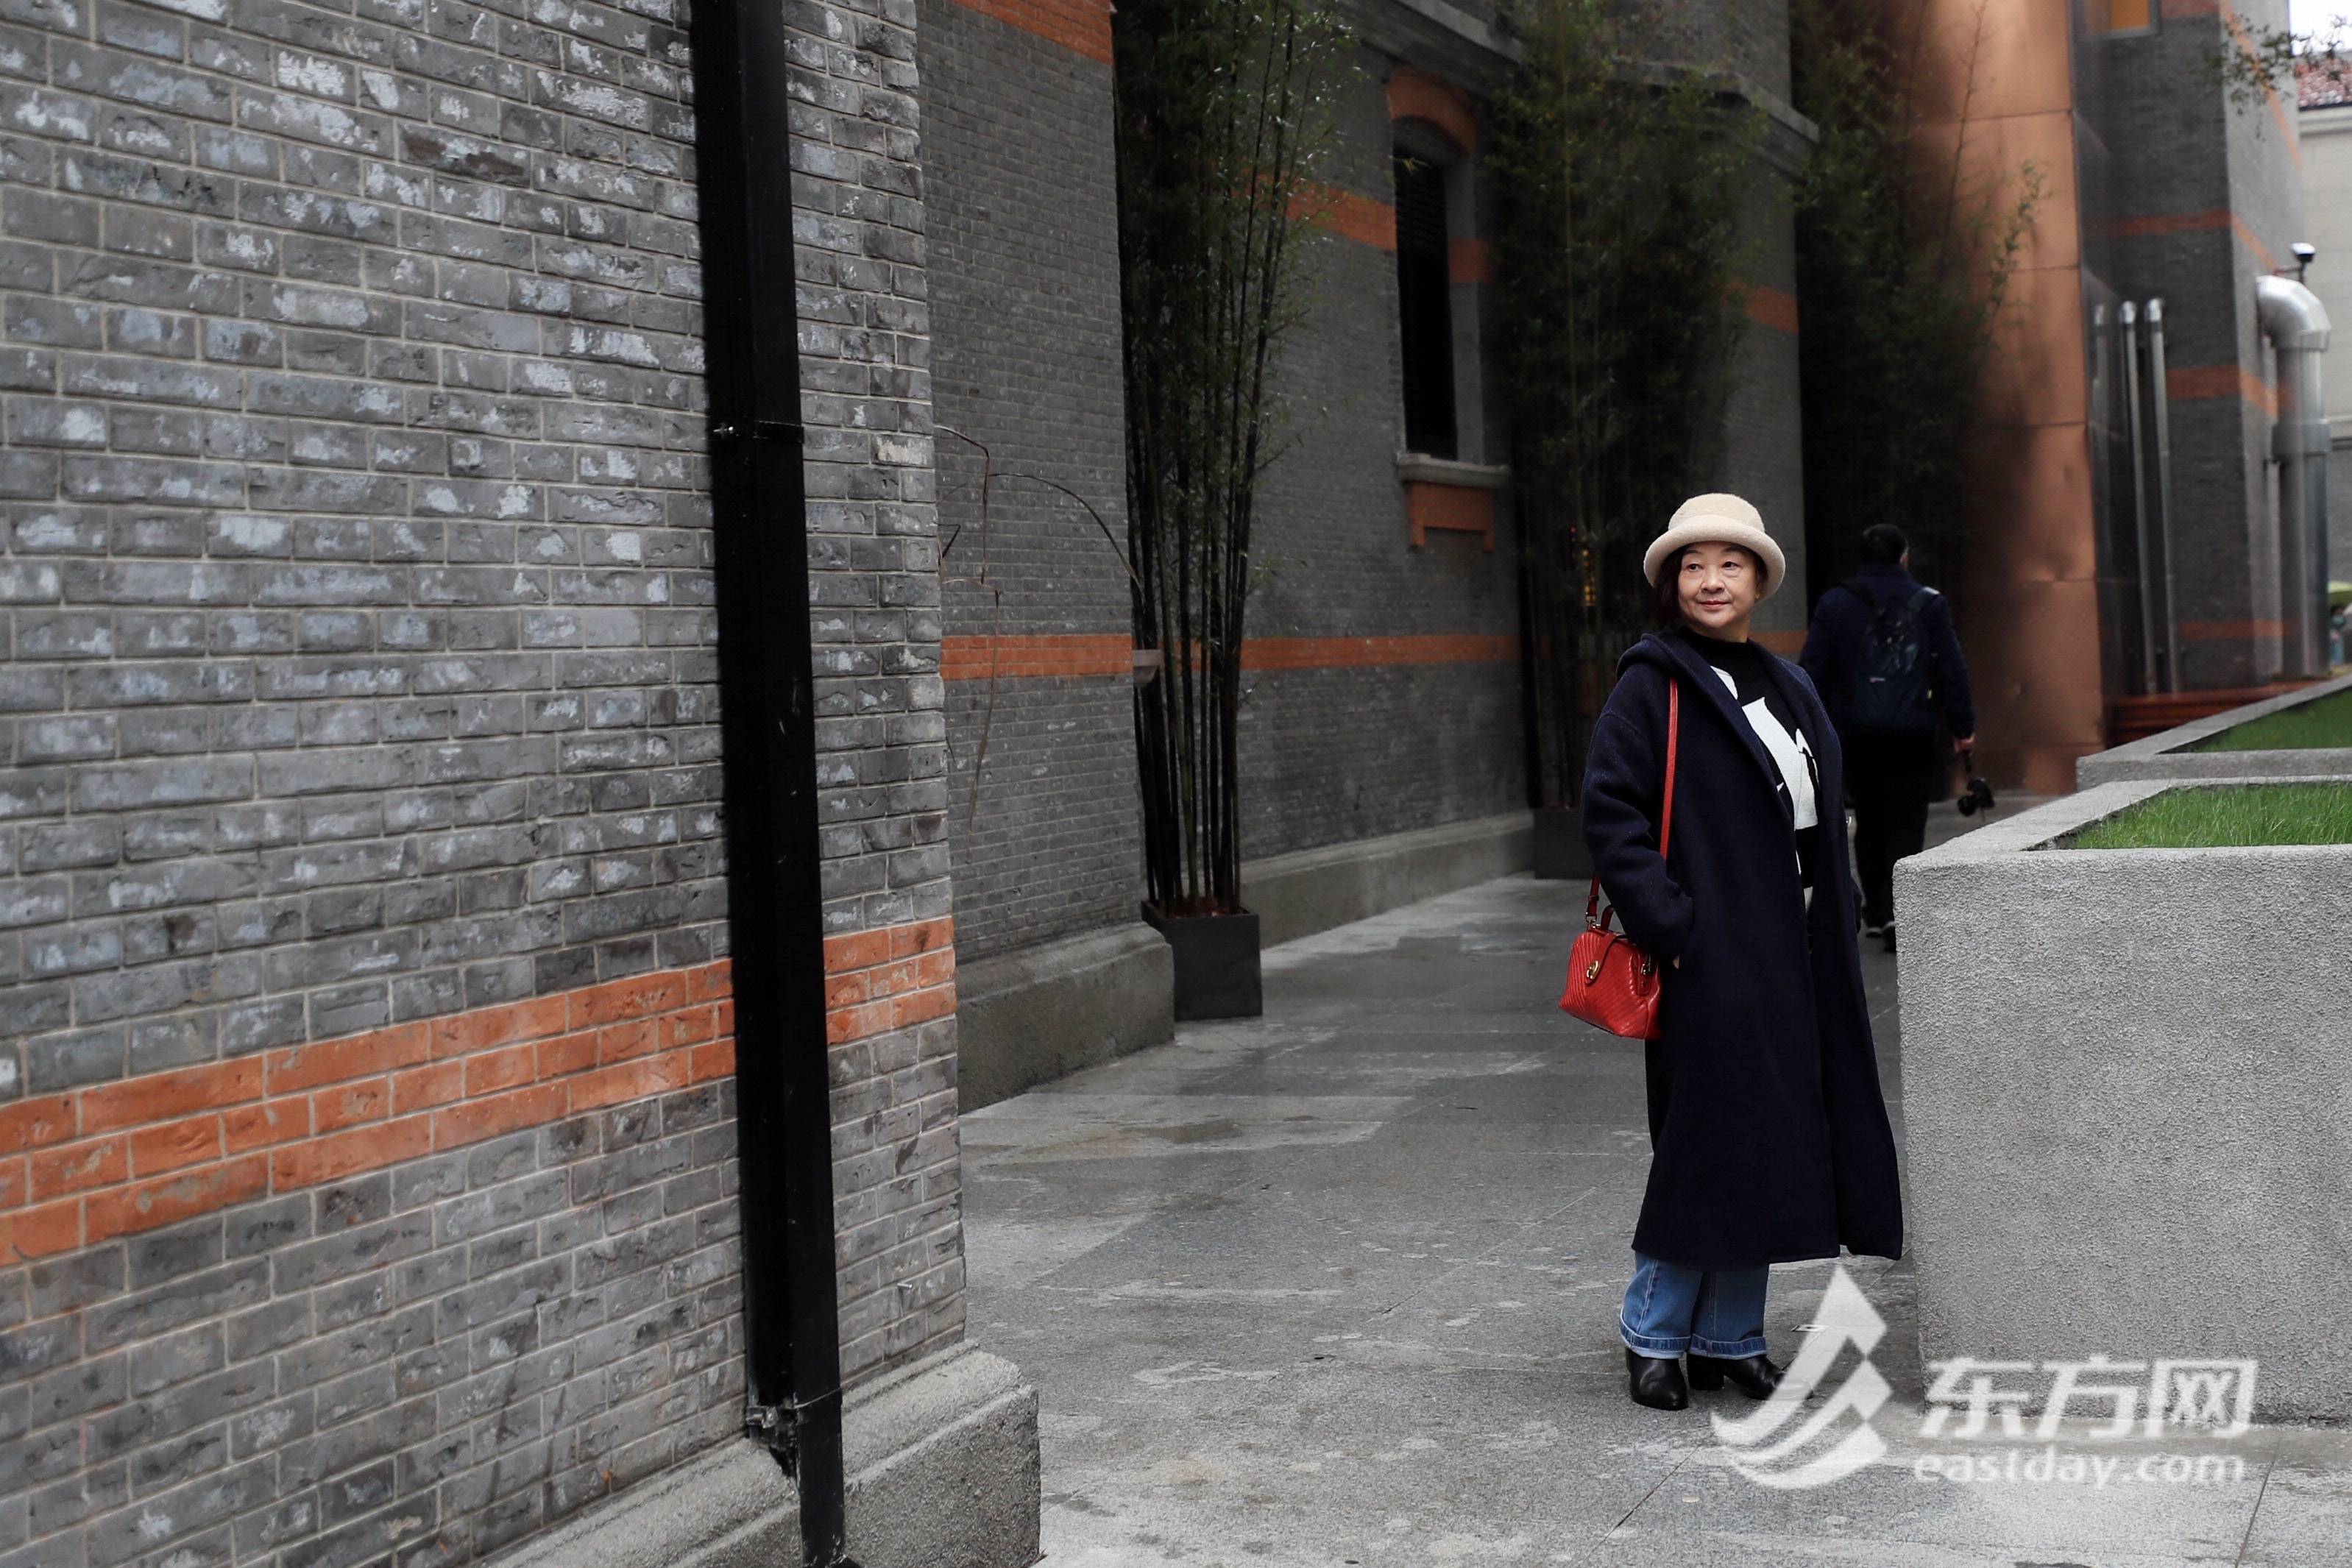 【文化旅游】张园“回归”上海市民雨中参观热情高